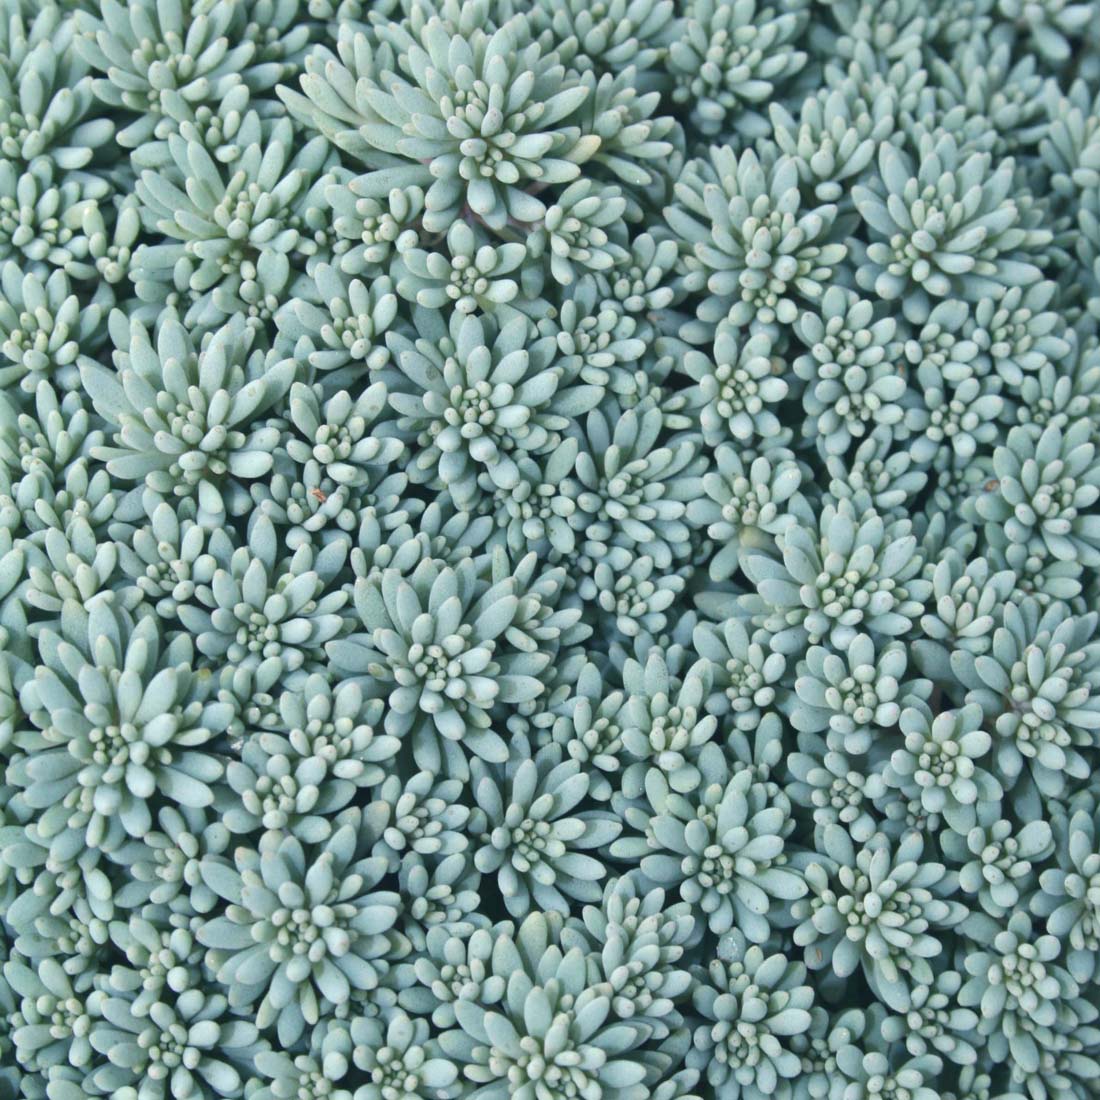 Sedum 'Blue Carpet' Stonecrop